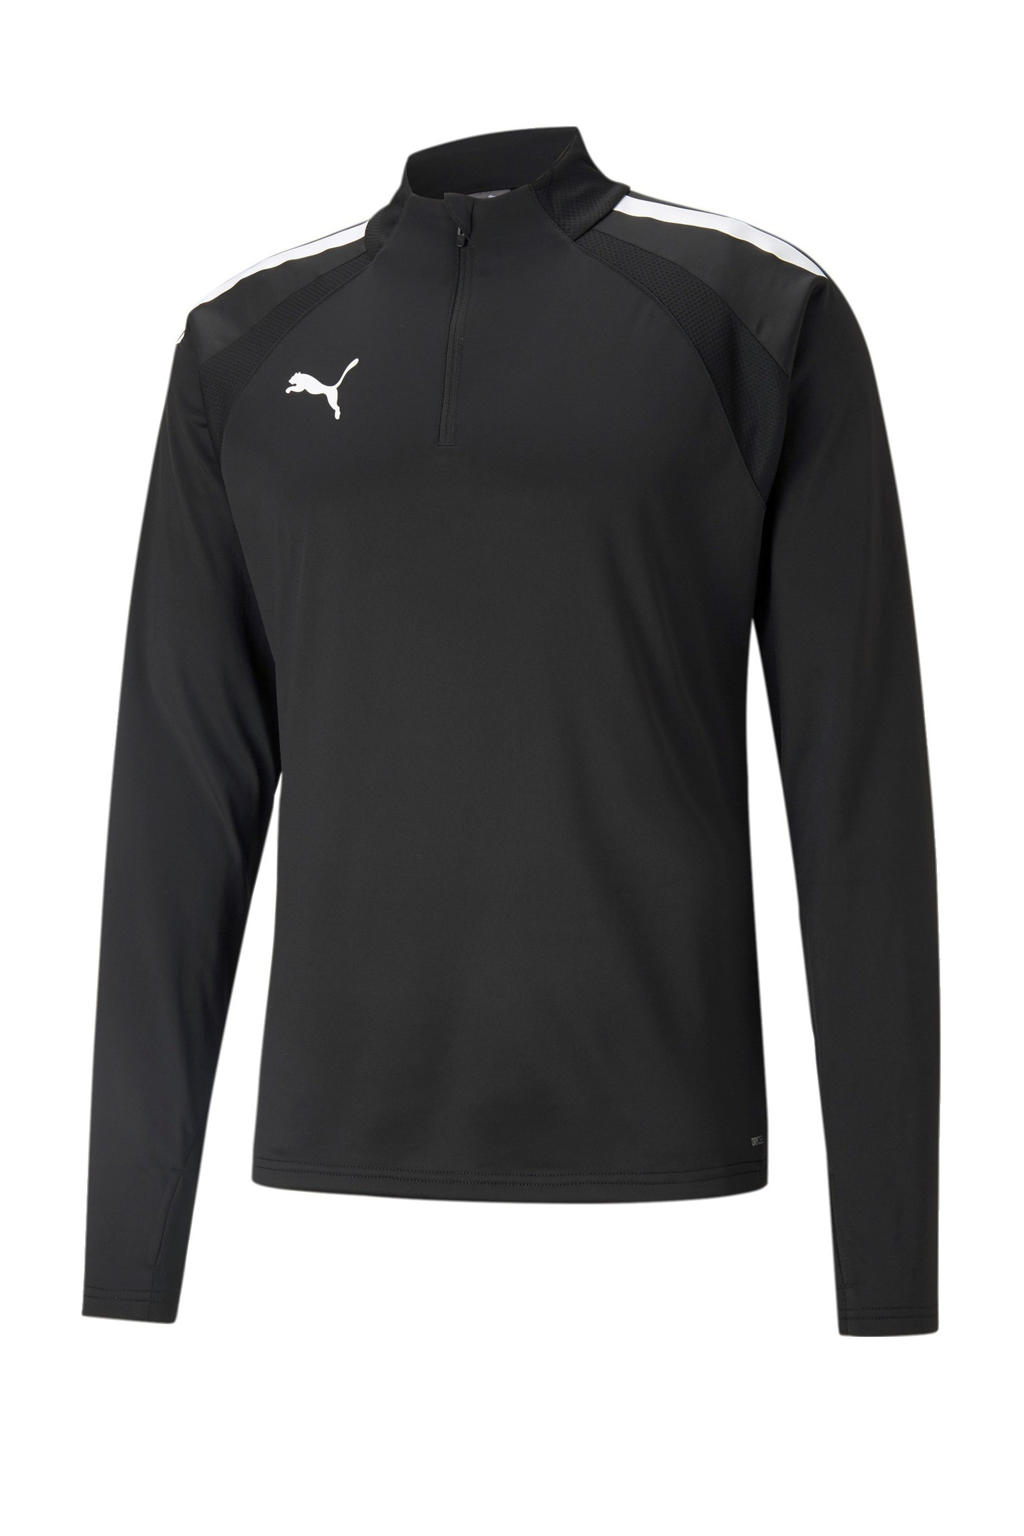 Zwart en witte heren Puma Senior voetbalshirt van gerecycled polyester met logo dessin, lange mouwen, opstaande kraag en halve rits